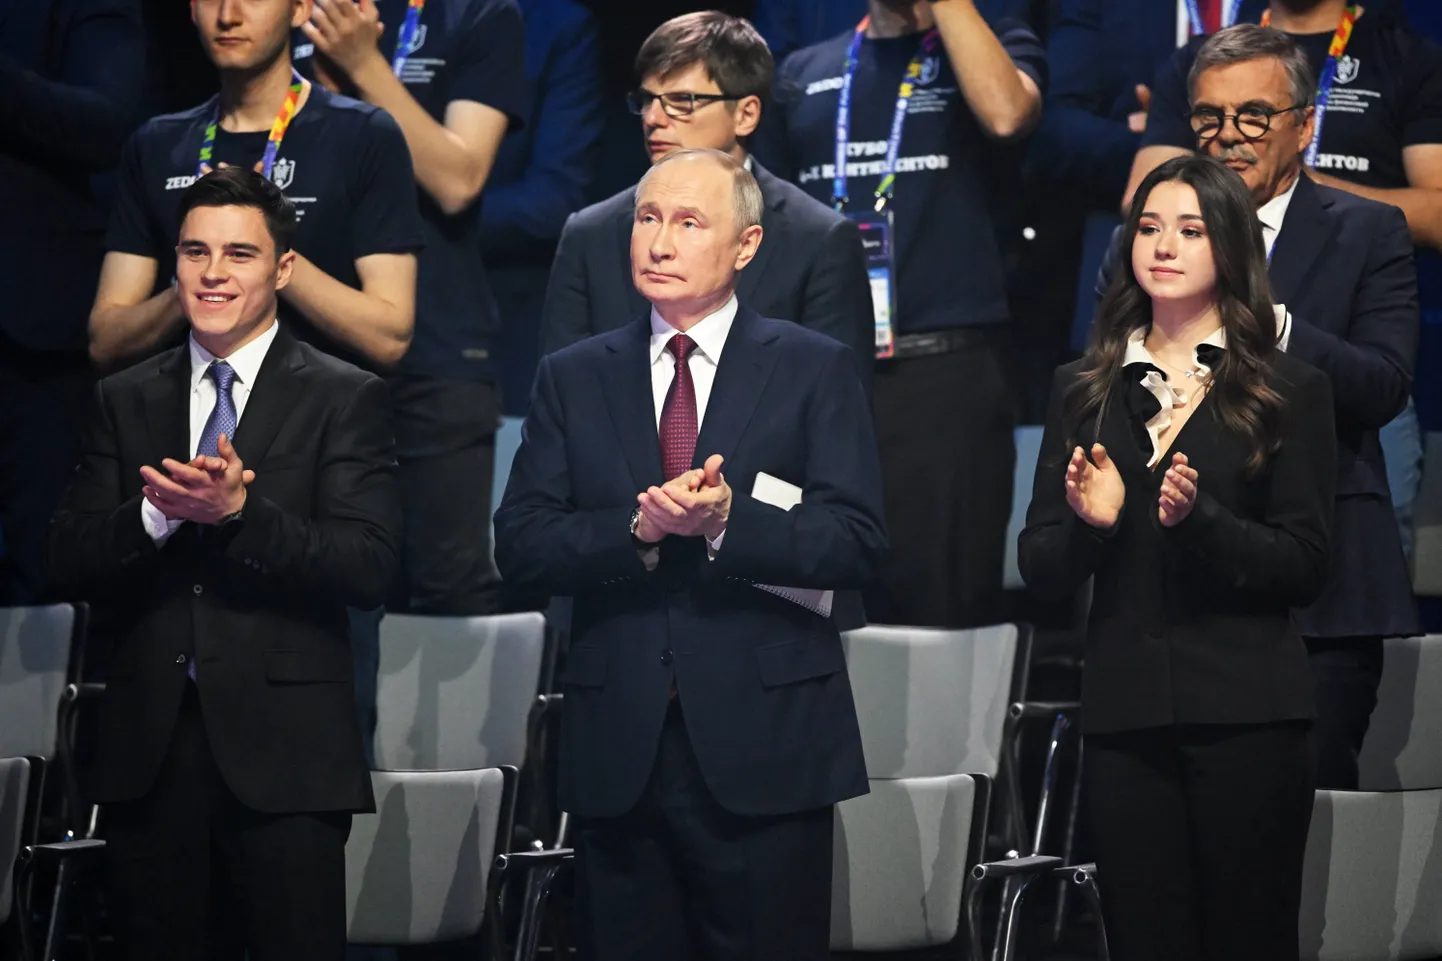 Камилу Валиеву (справа) усадили на церемонии открытия Игр будущего рядом с Владимиром Путиным.